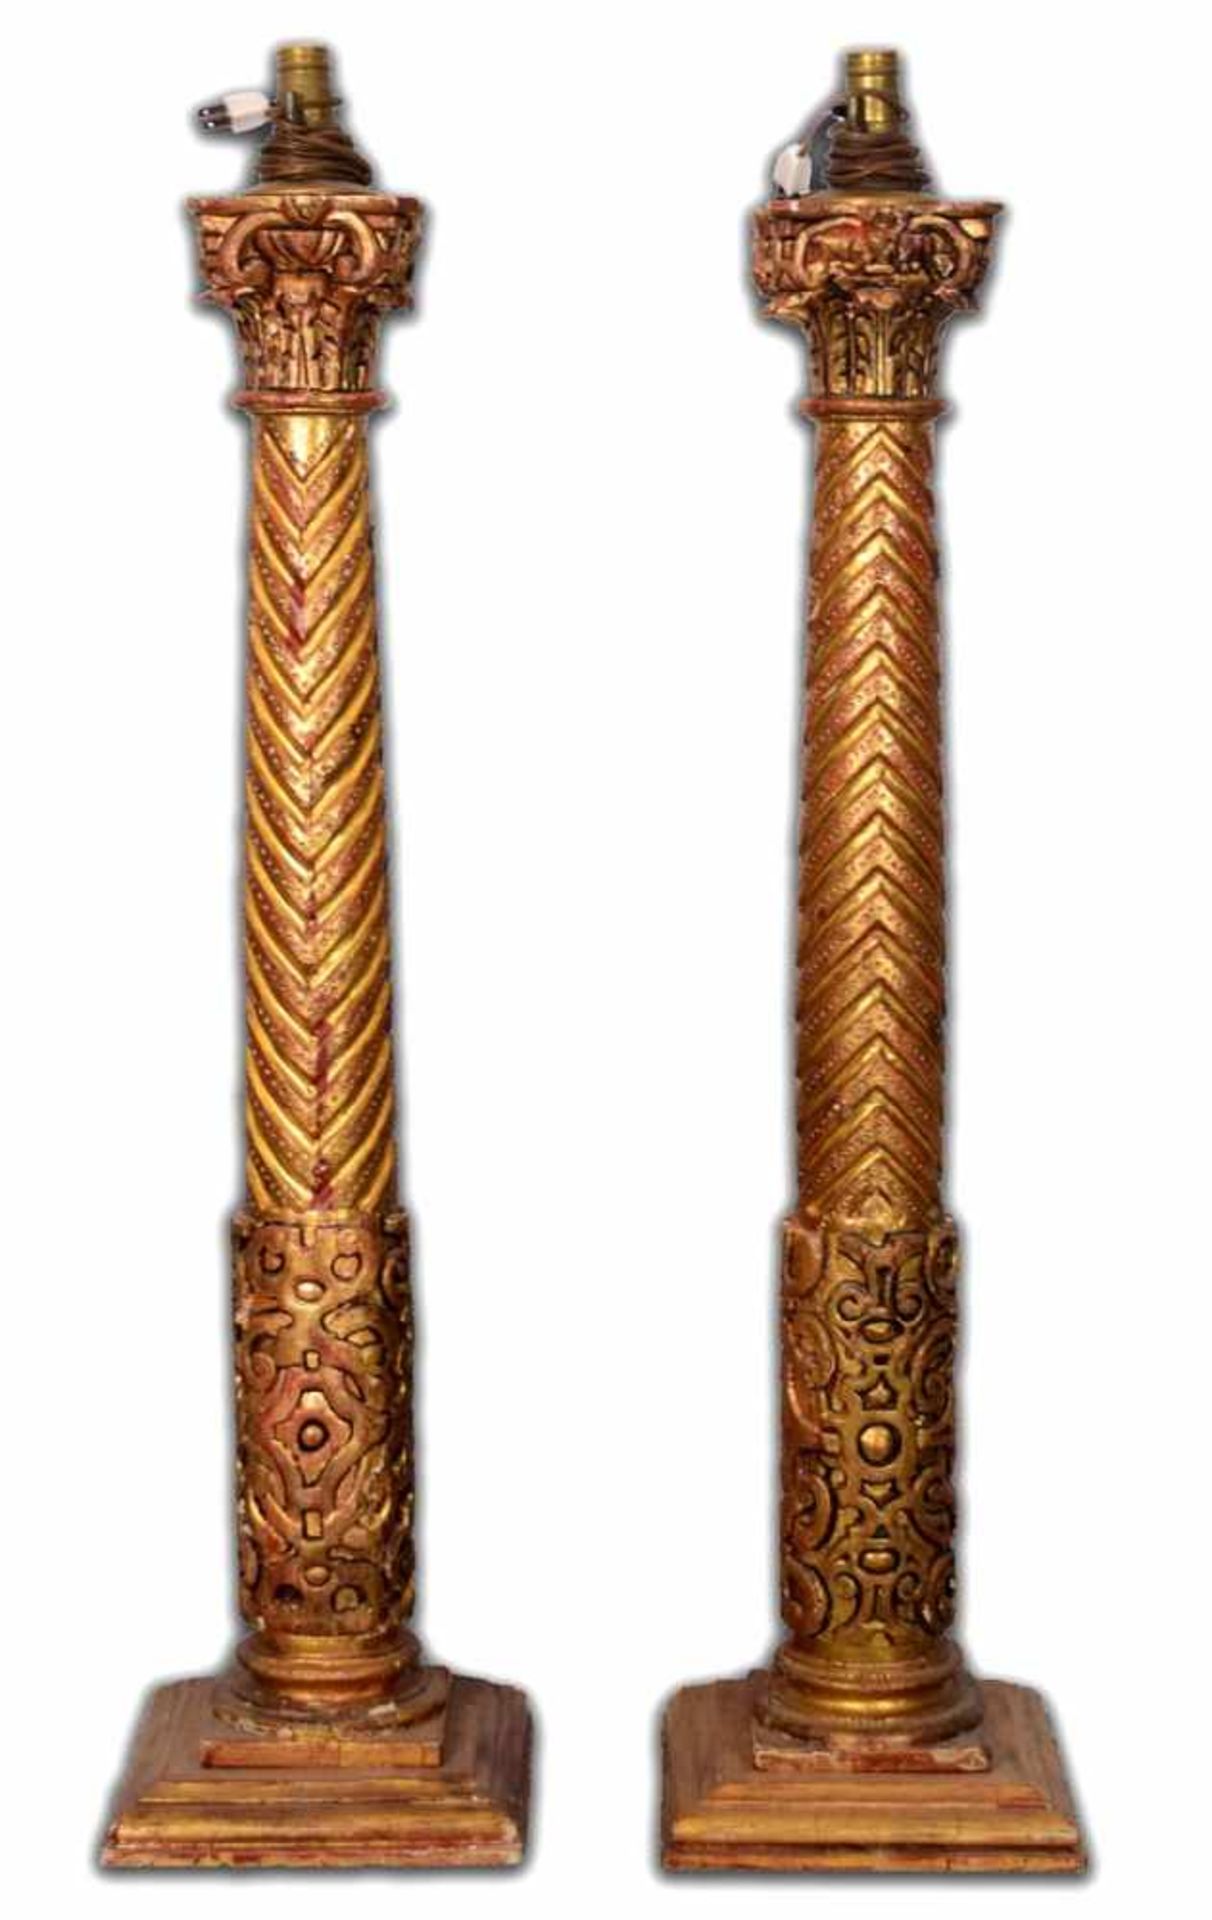 Zwei LampenfüßeHartholz, geschnitzt, auf rechteckigem Sockel stehend, mit Barock-Ornamenten